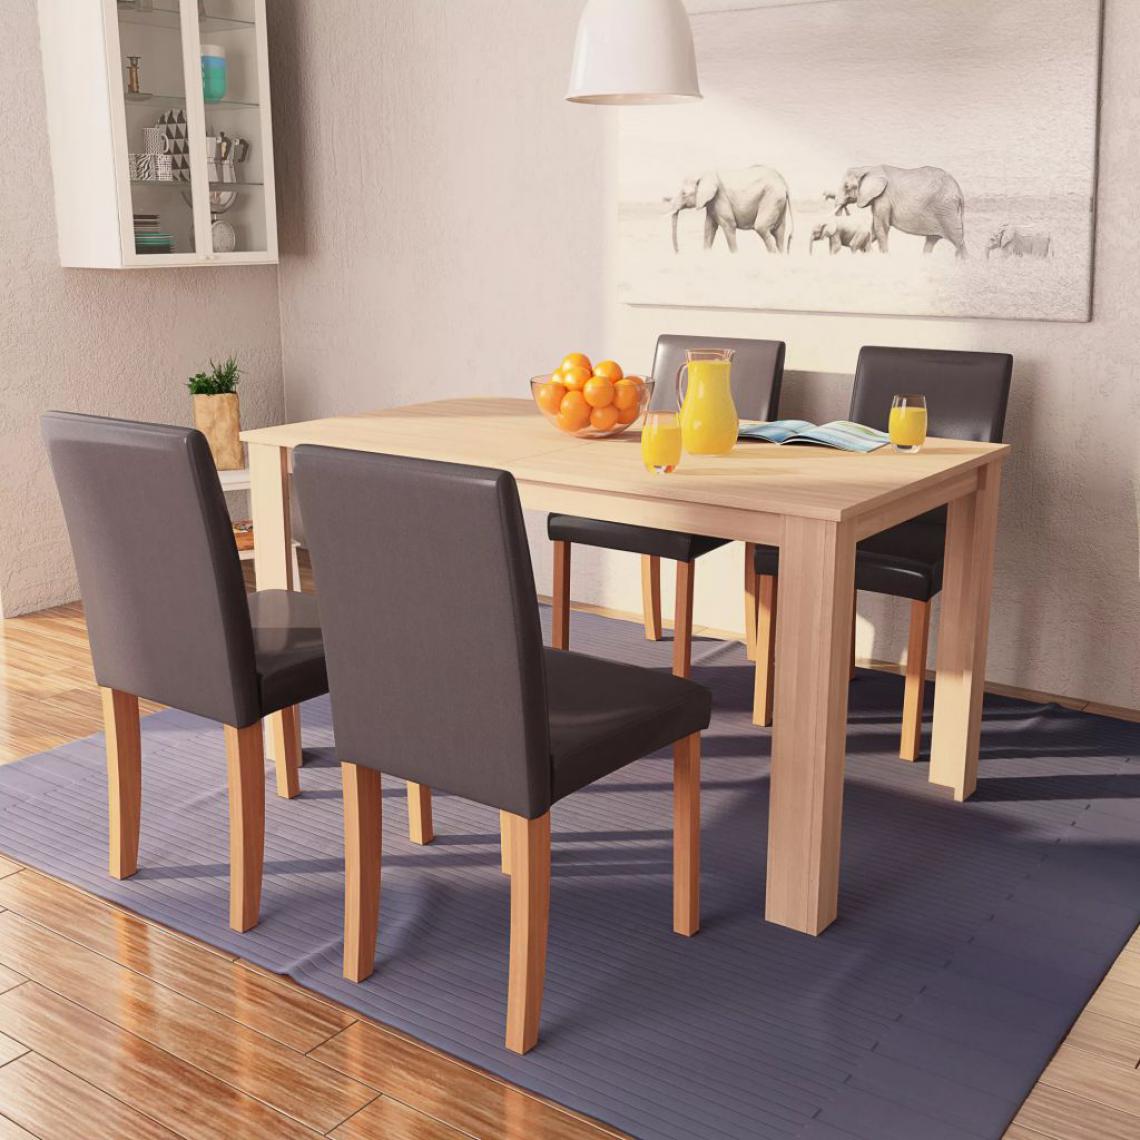 Chunhelife - Table et chaises 5 pcs Cuir synthétique Chêne Marron - Tables à manger